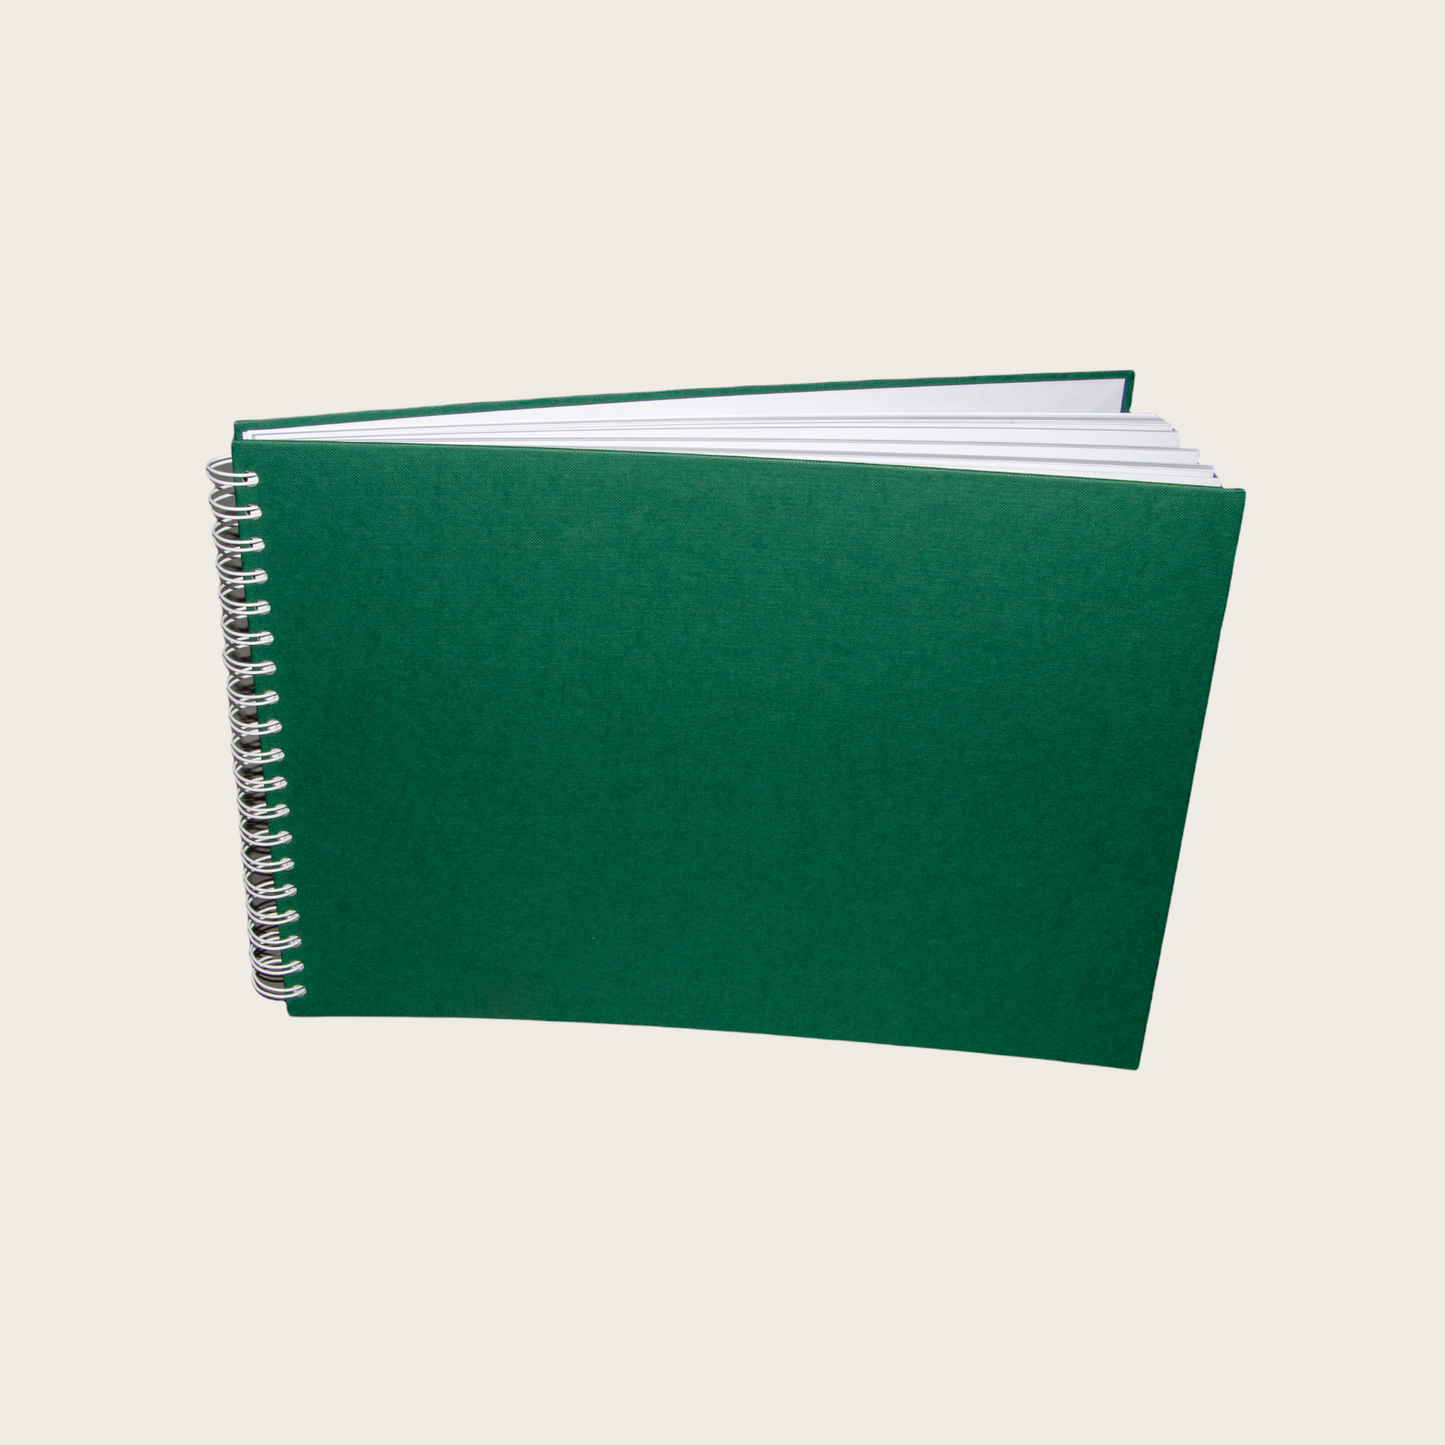 Schetsboek 'Groen'